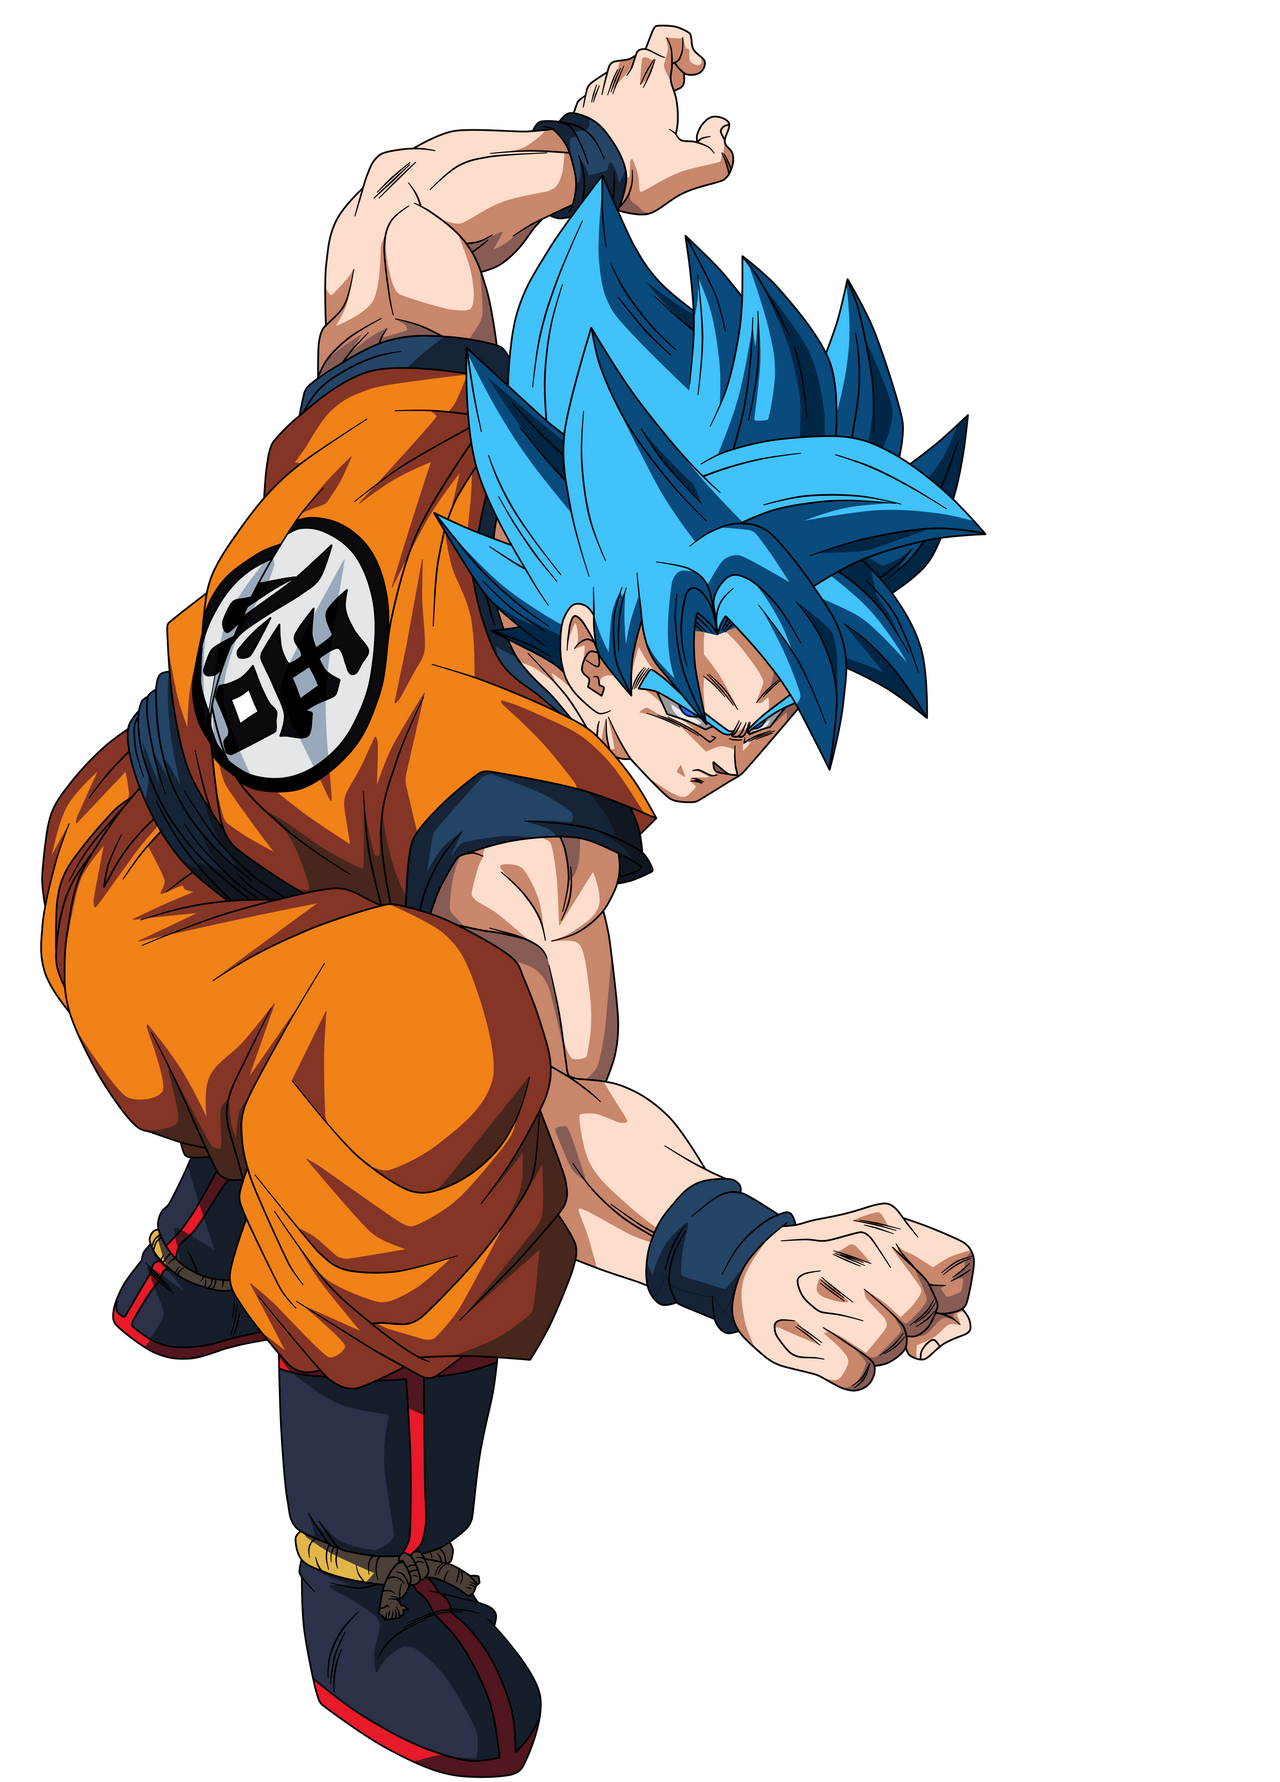 Goku Super Saiyan Blue by crismarshall on DeviantArt  Goku super saiyan  blue, Dragon ball super manga, Anime dragon ball goku